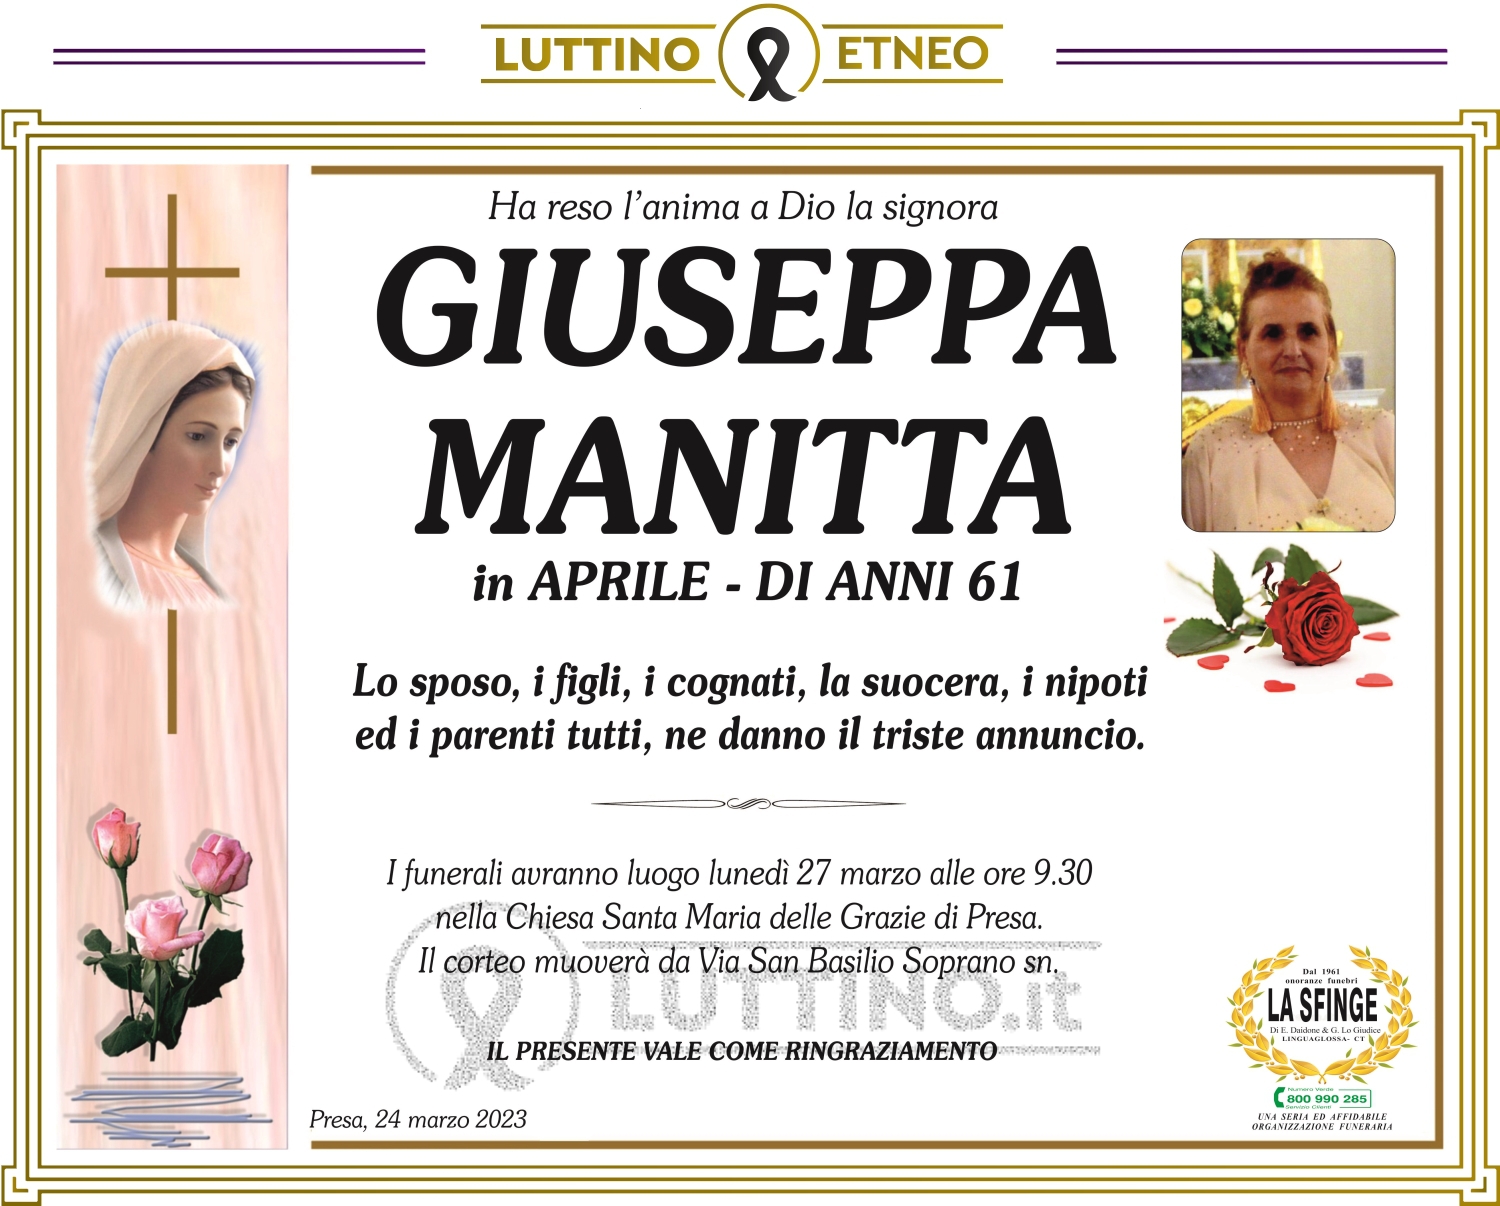 Giuseppa Manitta